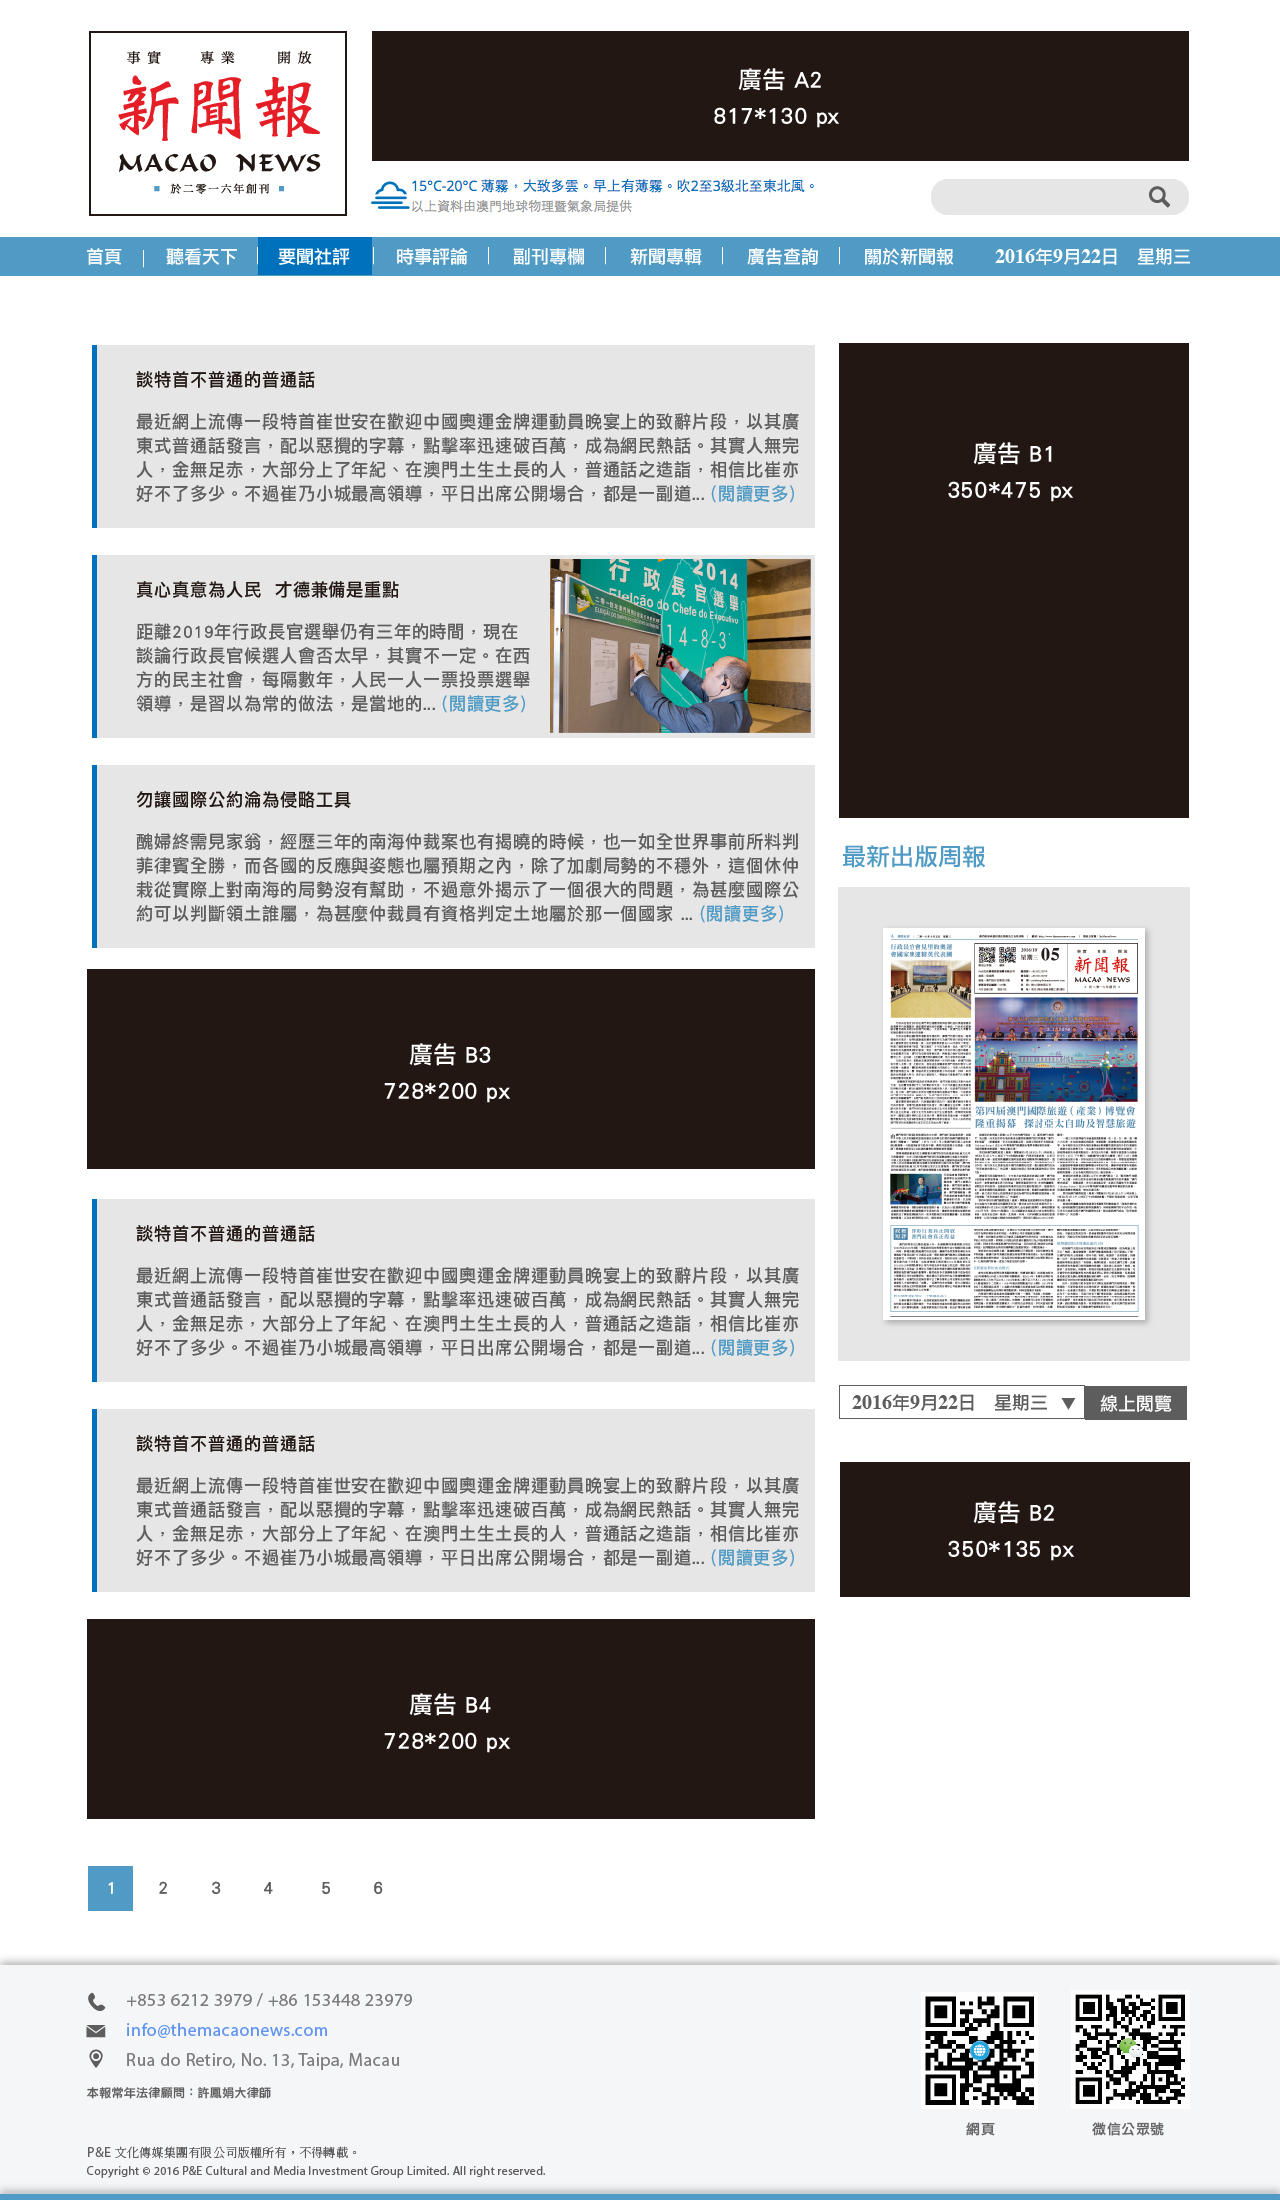 macao-news-website-ad-04